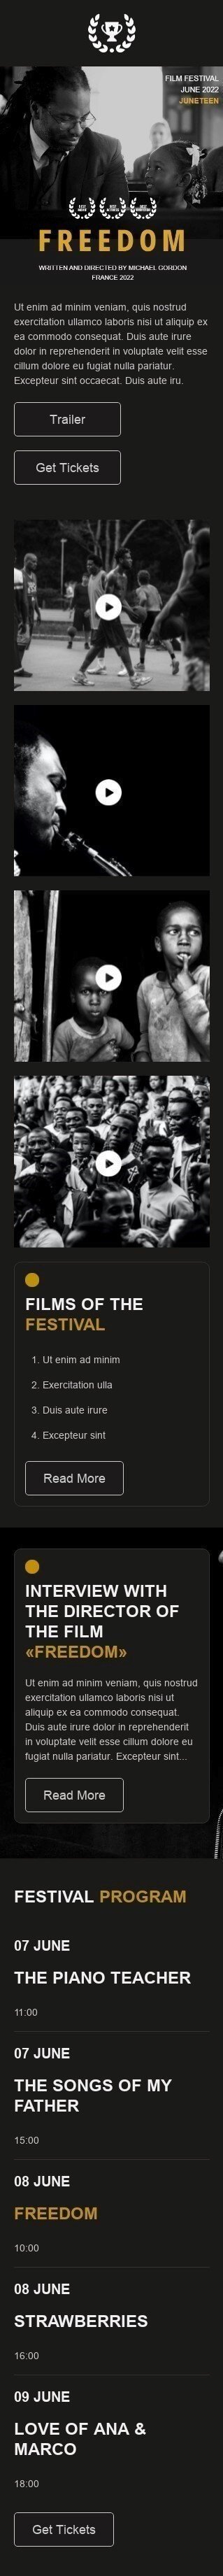 Plantilla de correo electrónico «Festival de Cine» de Juneteenth para la industria de Películas Vista de móvil